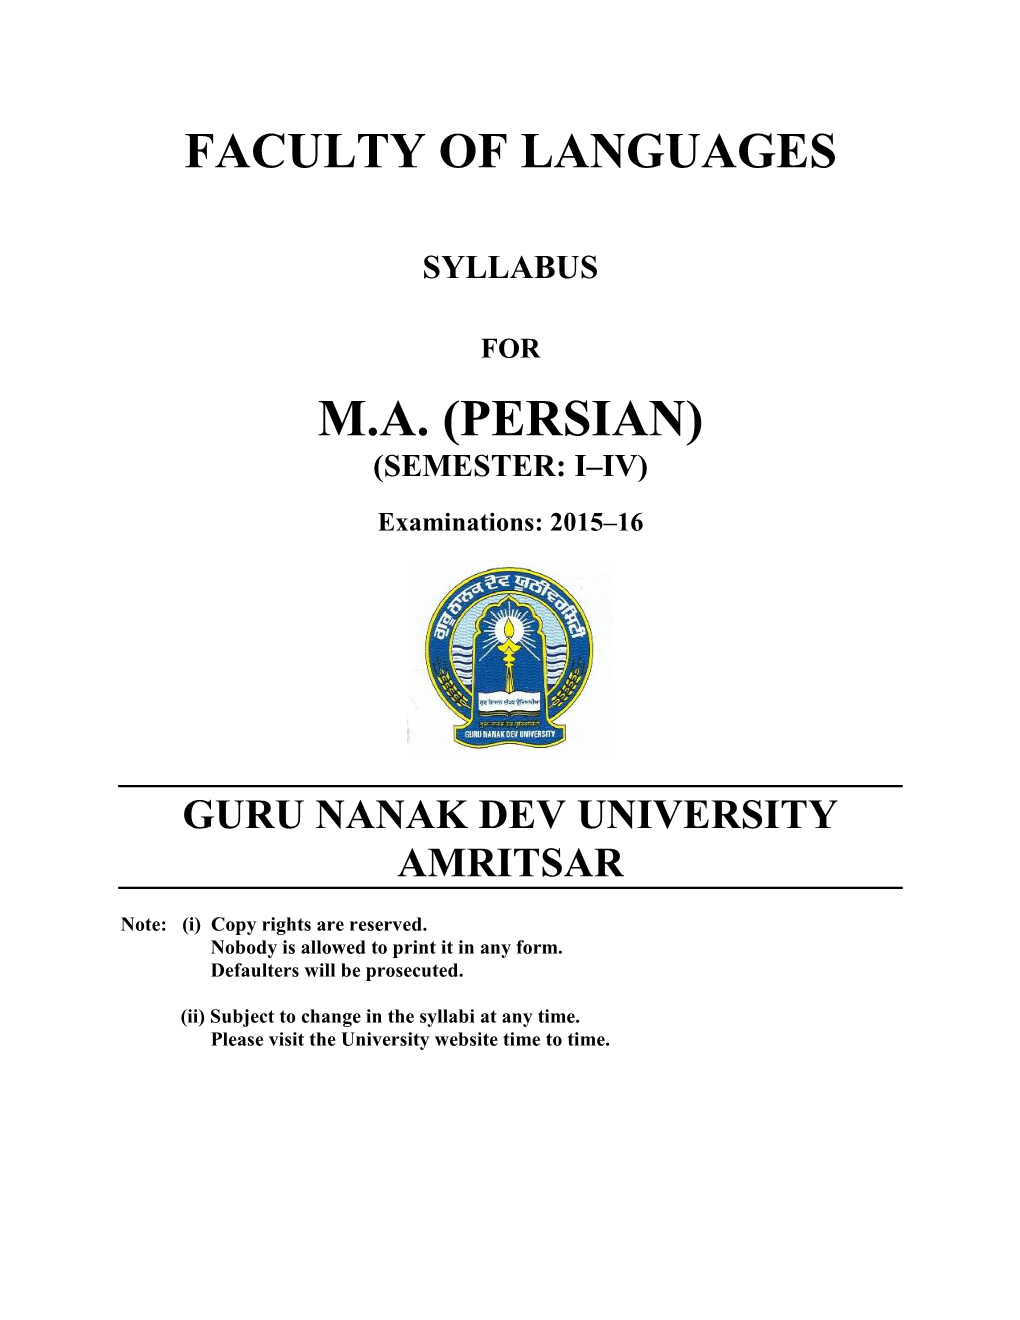 M.A. (PERSIAN) (SEMESTER: I–IV) Examinations: 2015–16